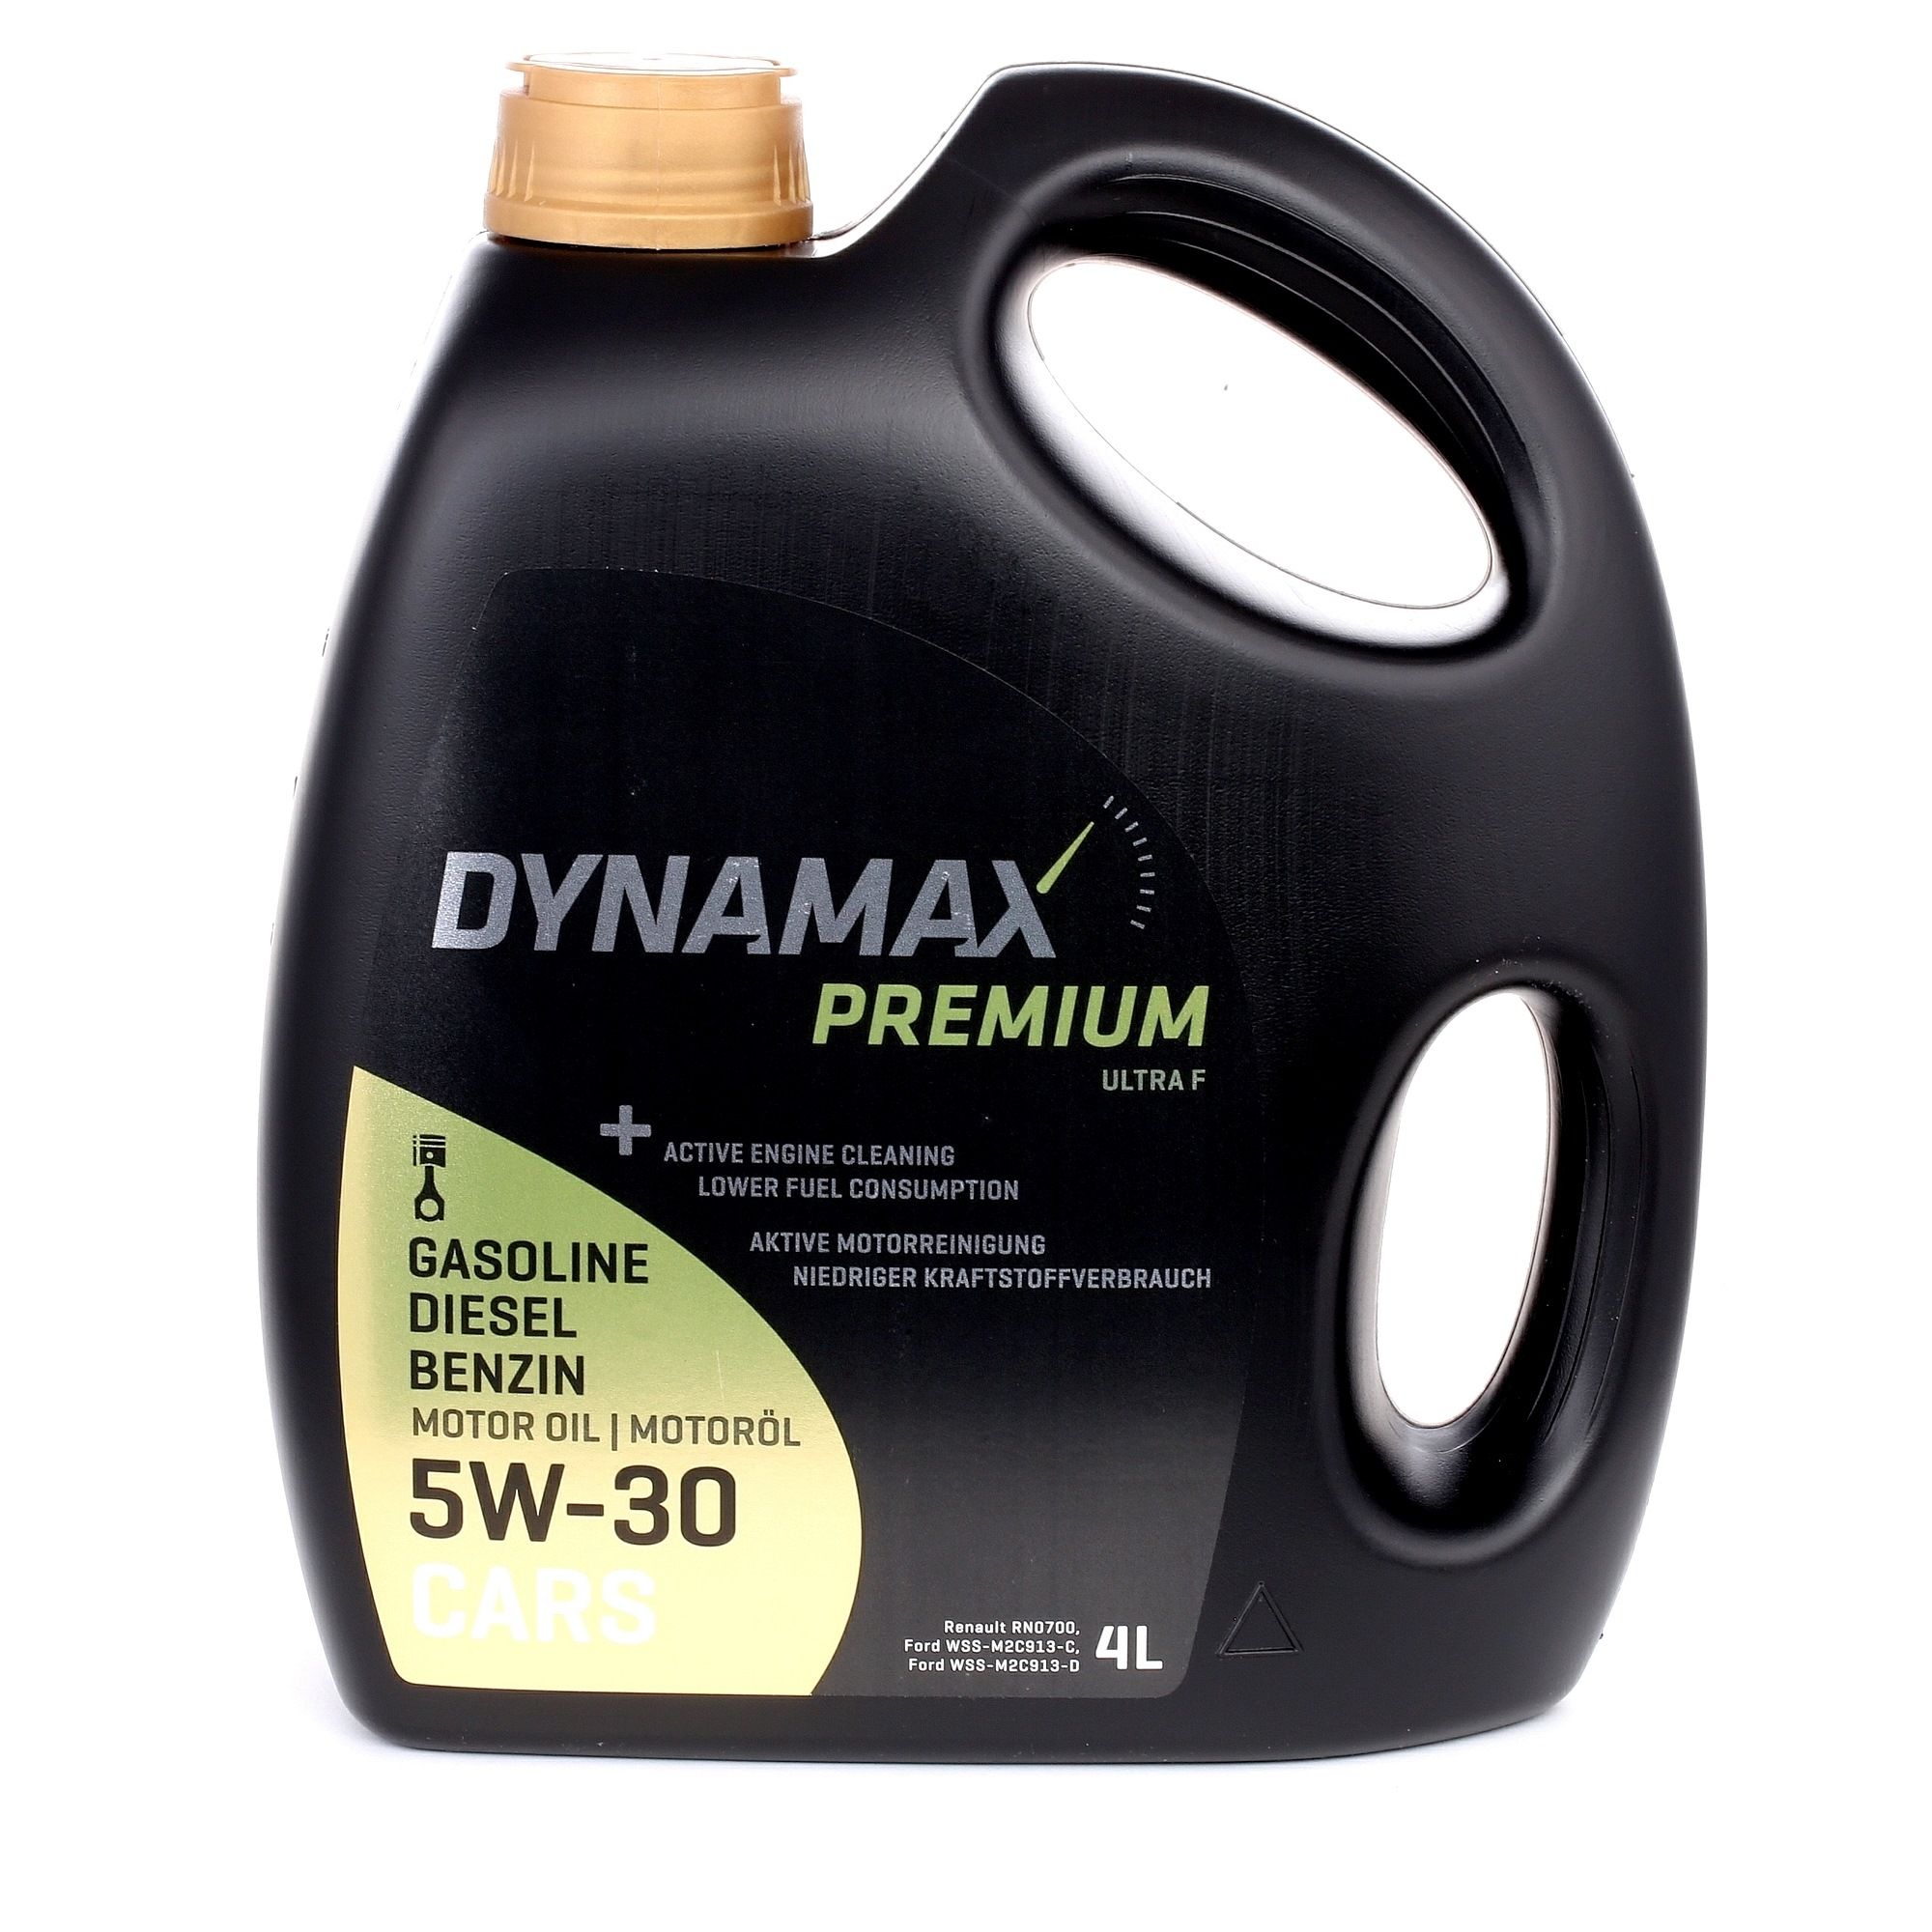 Acquisto Olio per motore DYNAMAX 501760 Premium, Ultra F 5W-30, 4l, Olio sintetico